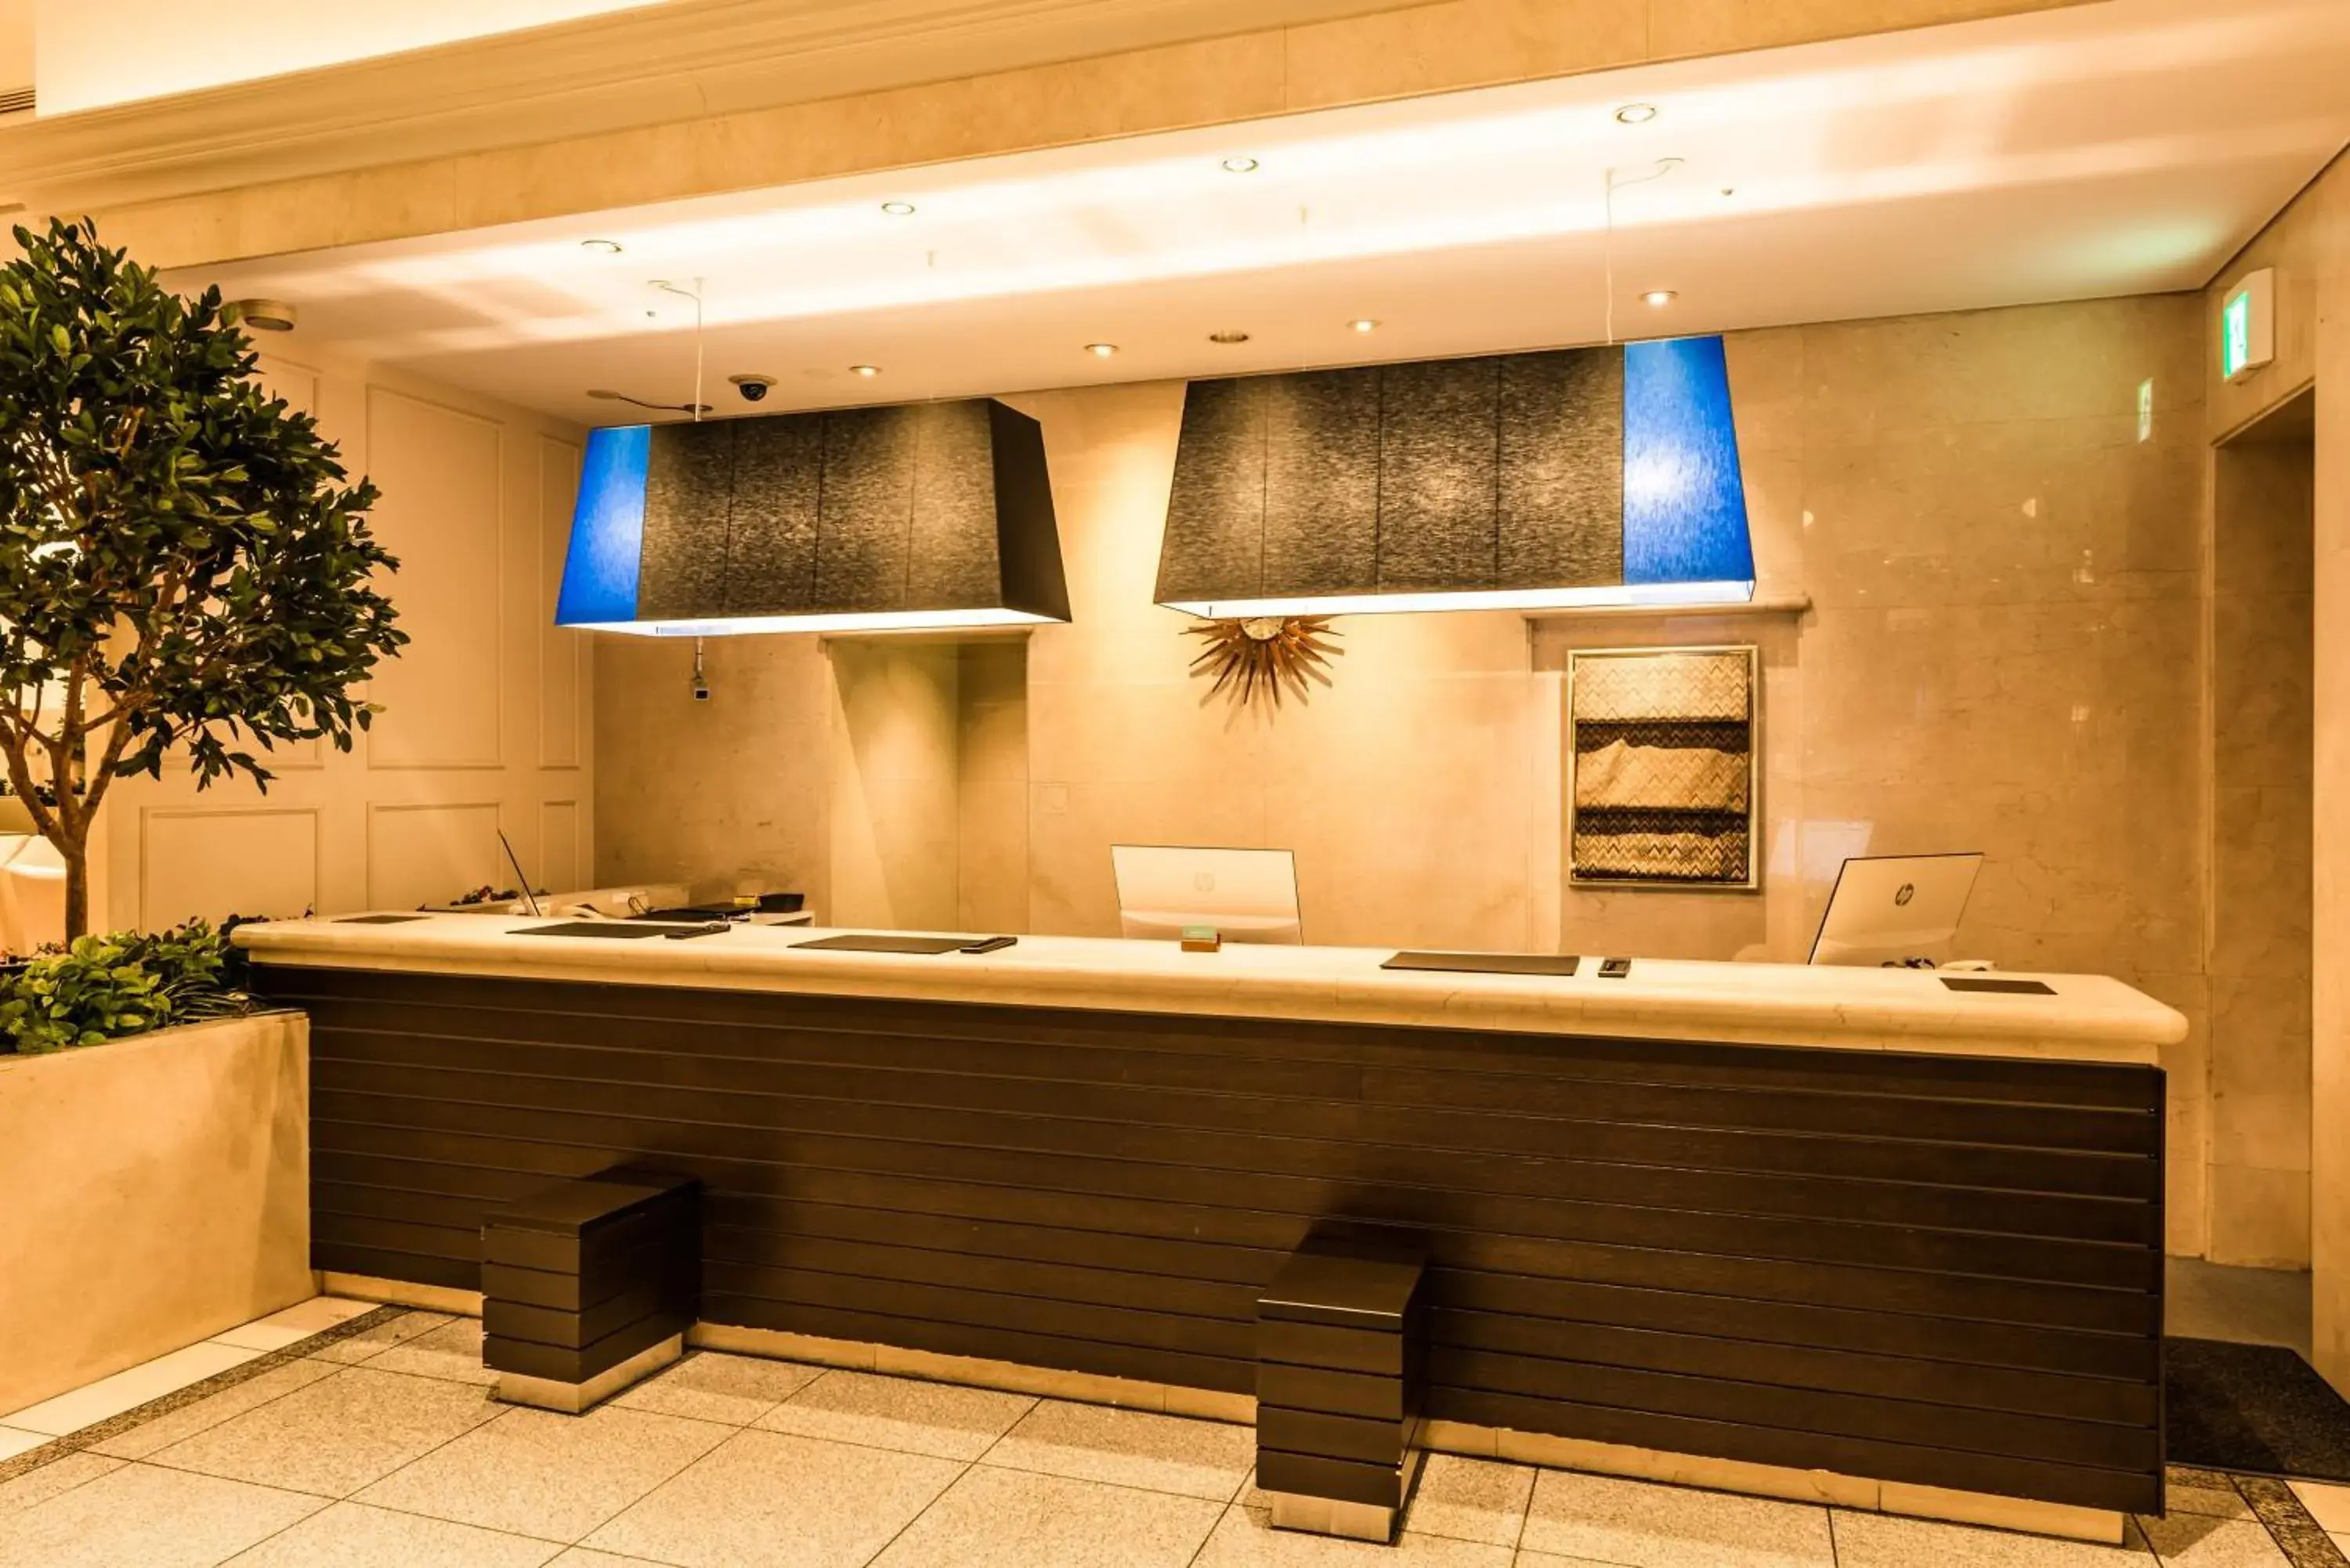 Lobby or reception, Bathroom in HOTEL MYSTAYS PREMIER Omori